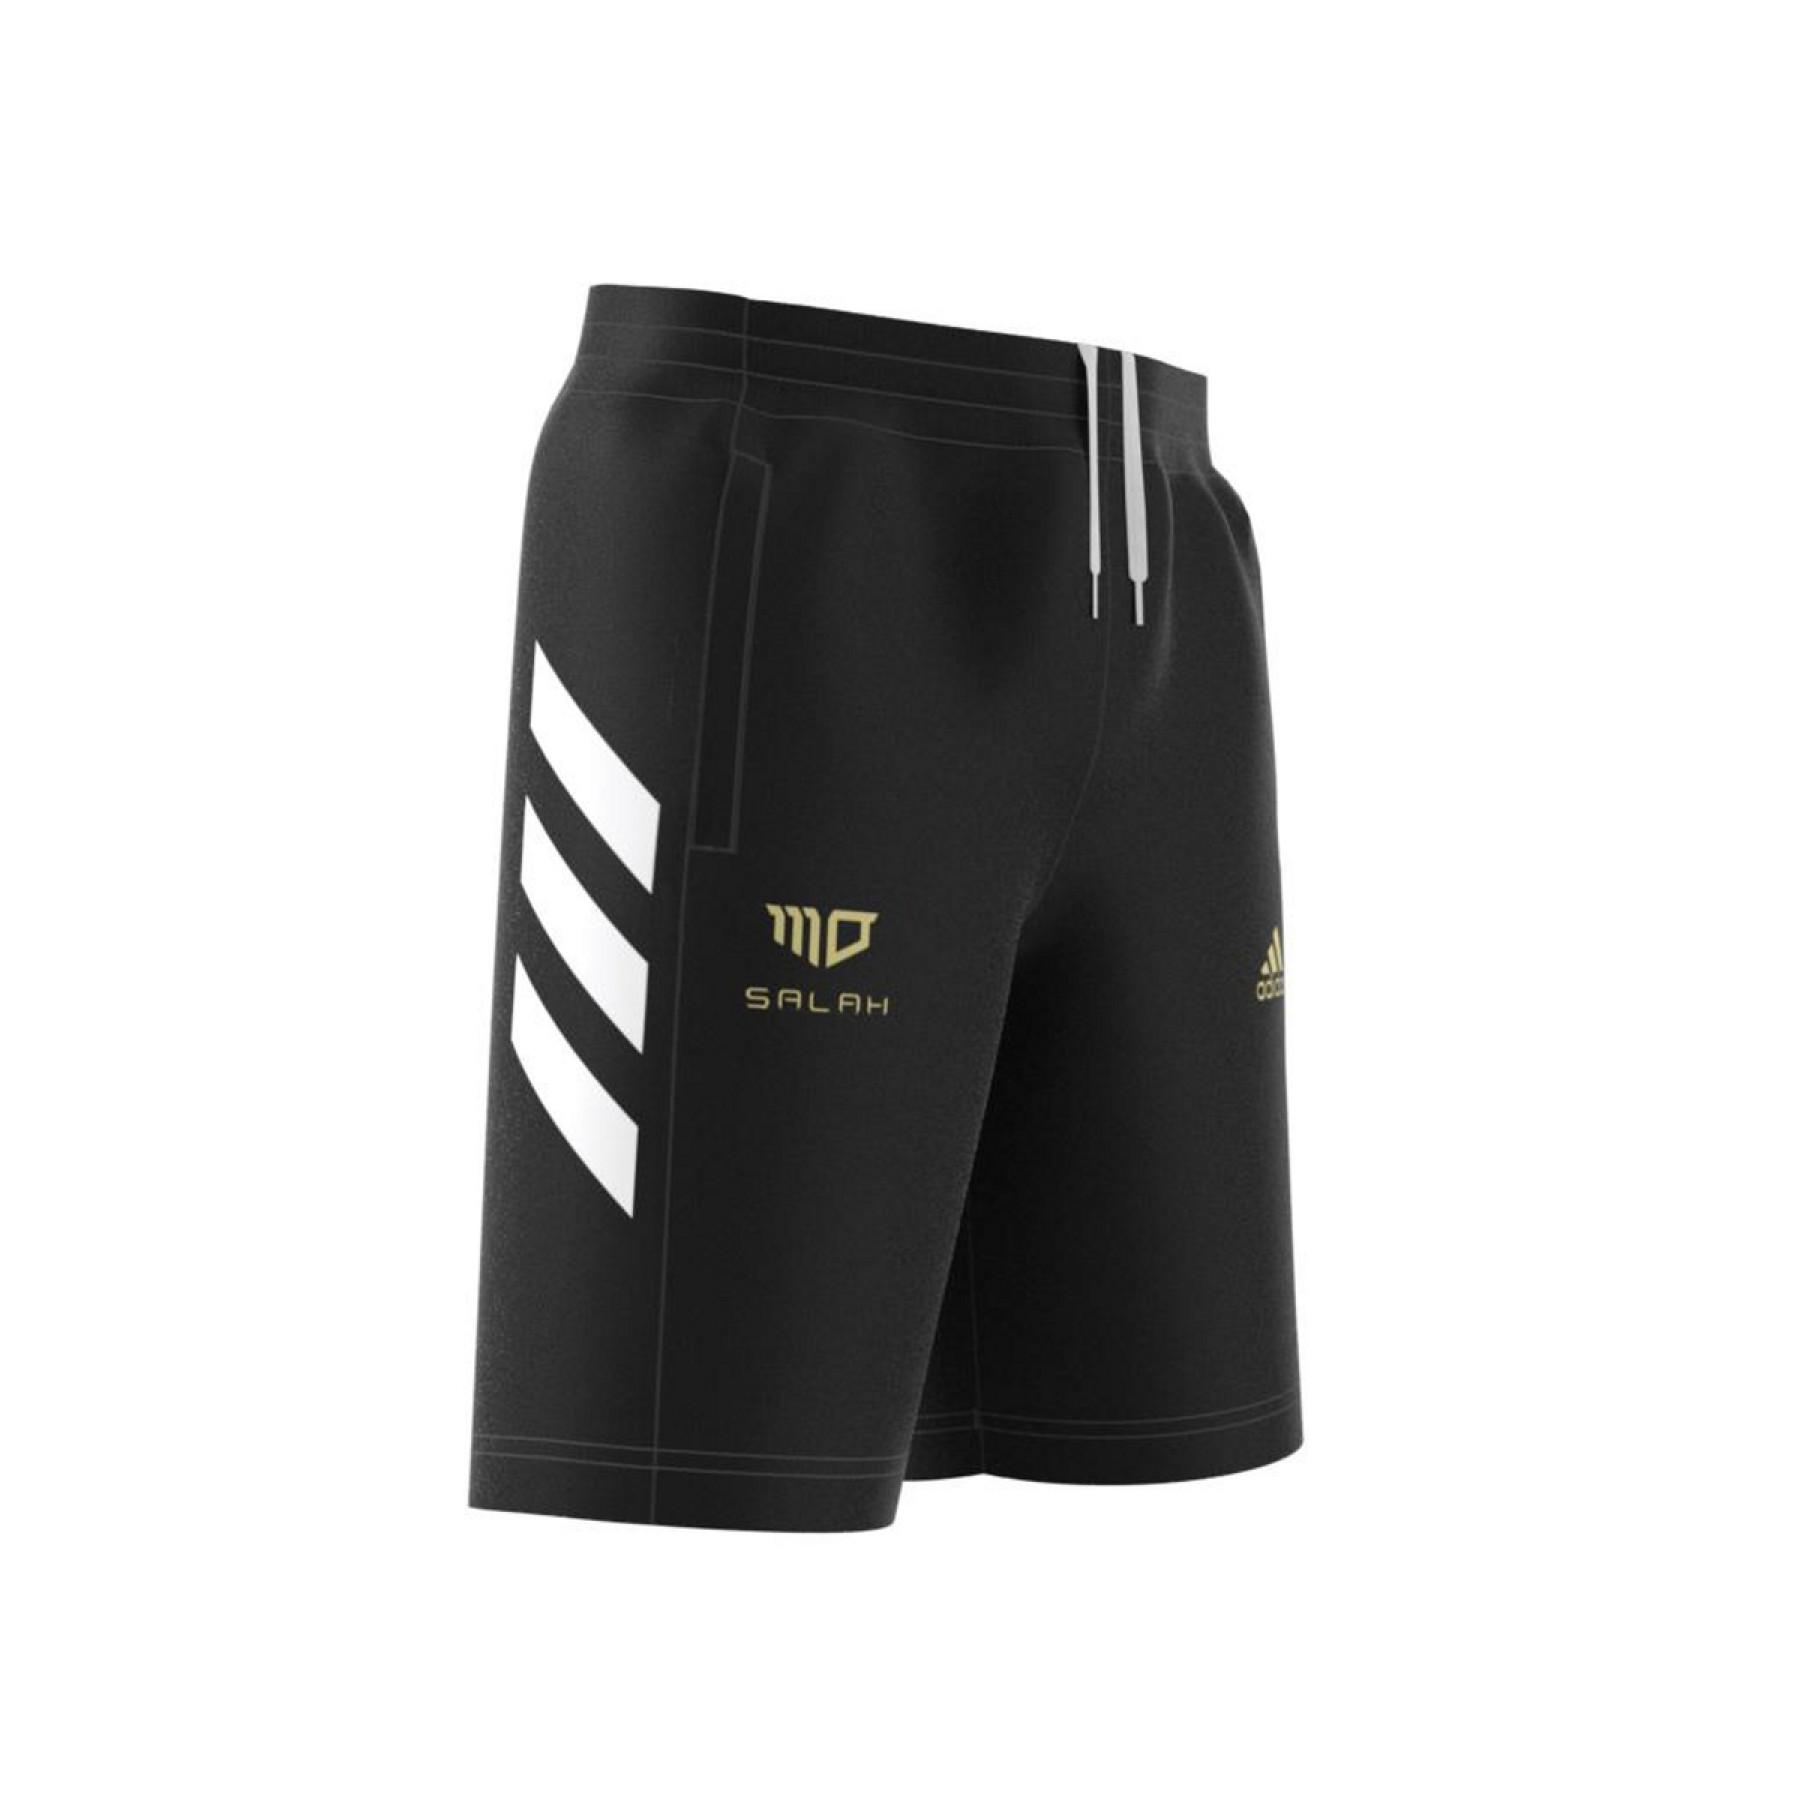 Pantalones cortos para niños inspirados en el fútbol de adidasalah